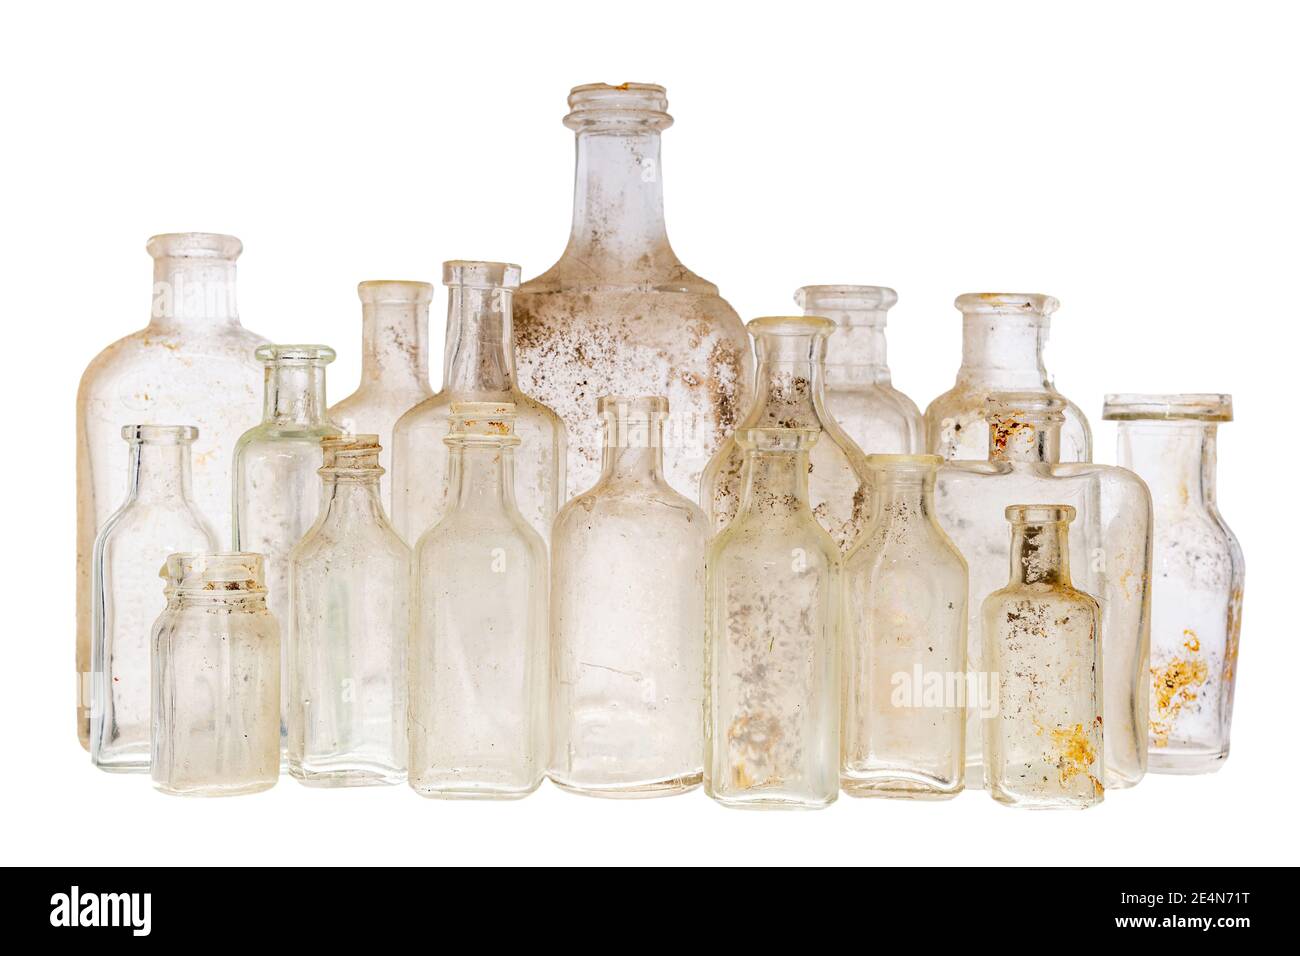 Download Botellas antiguas foto de archivo. Imagen de histórico